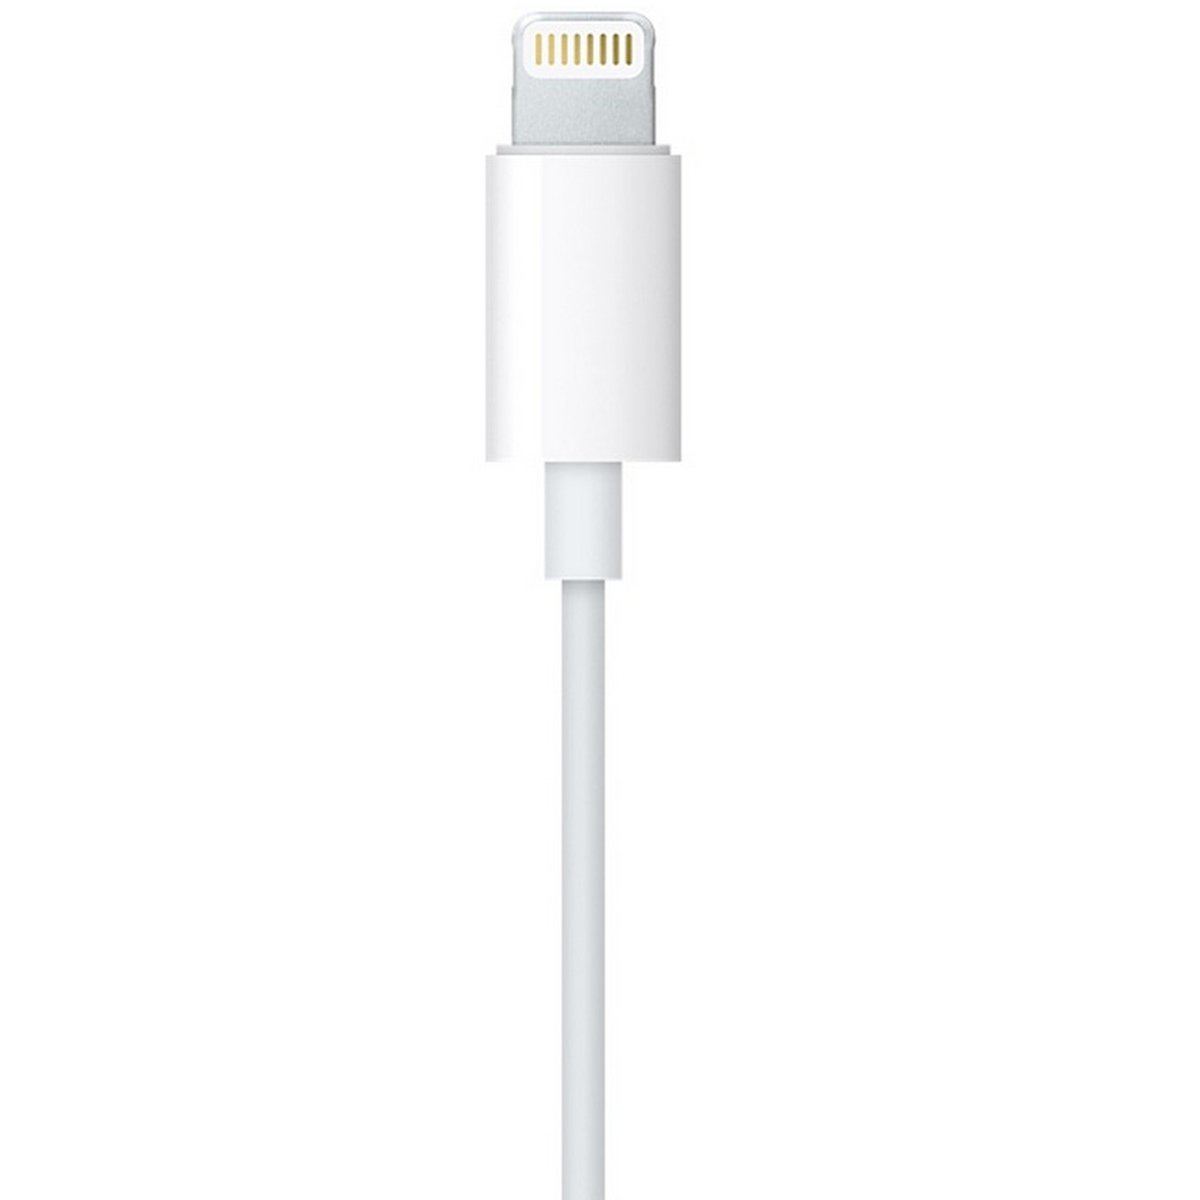 Apple Earpod Lightening Cable MMTN2